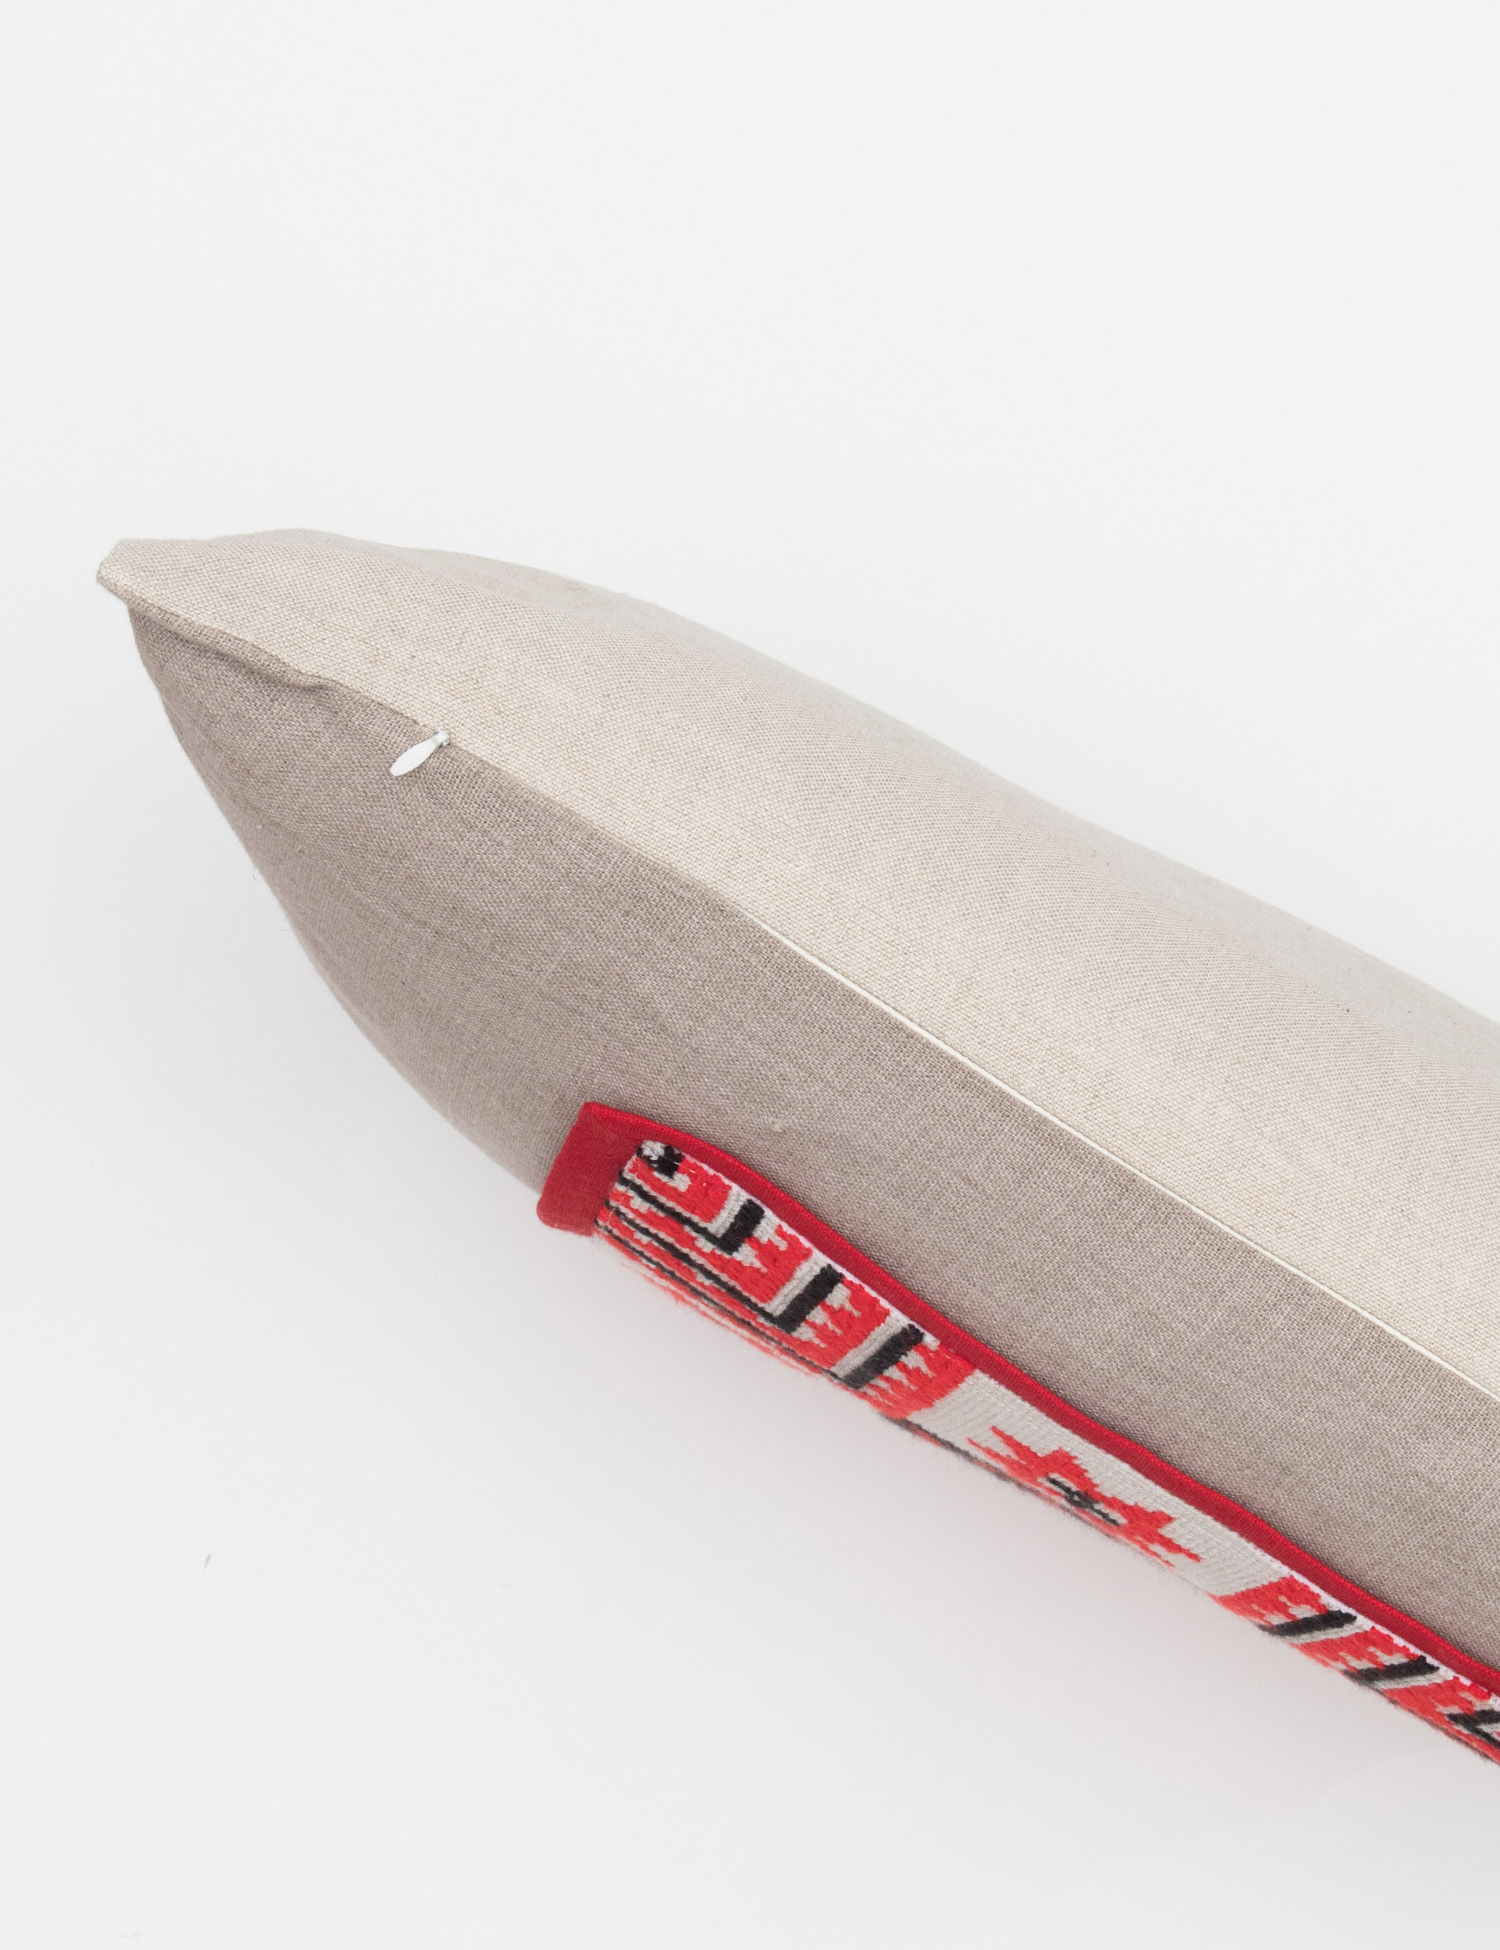 Картинка Сіра лляна декоративна подушка з вишивкою 40*60 см